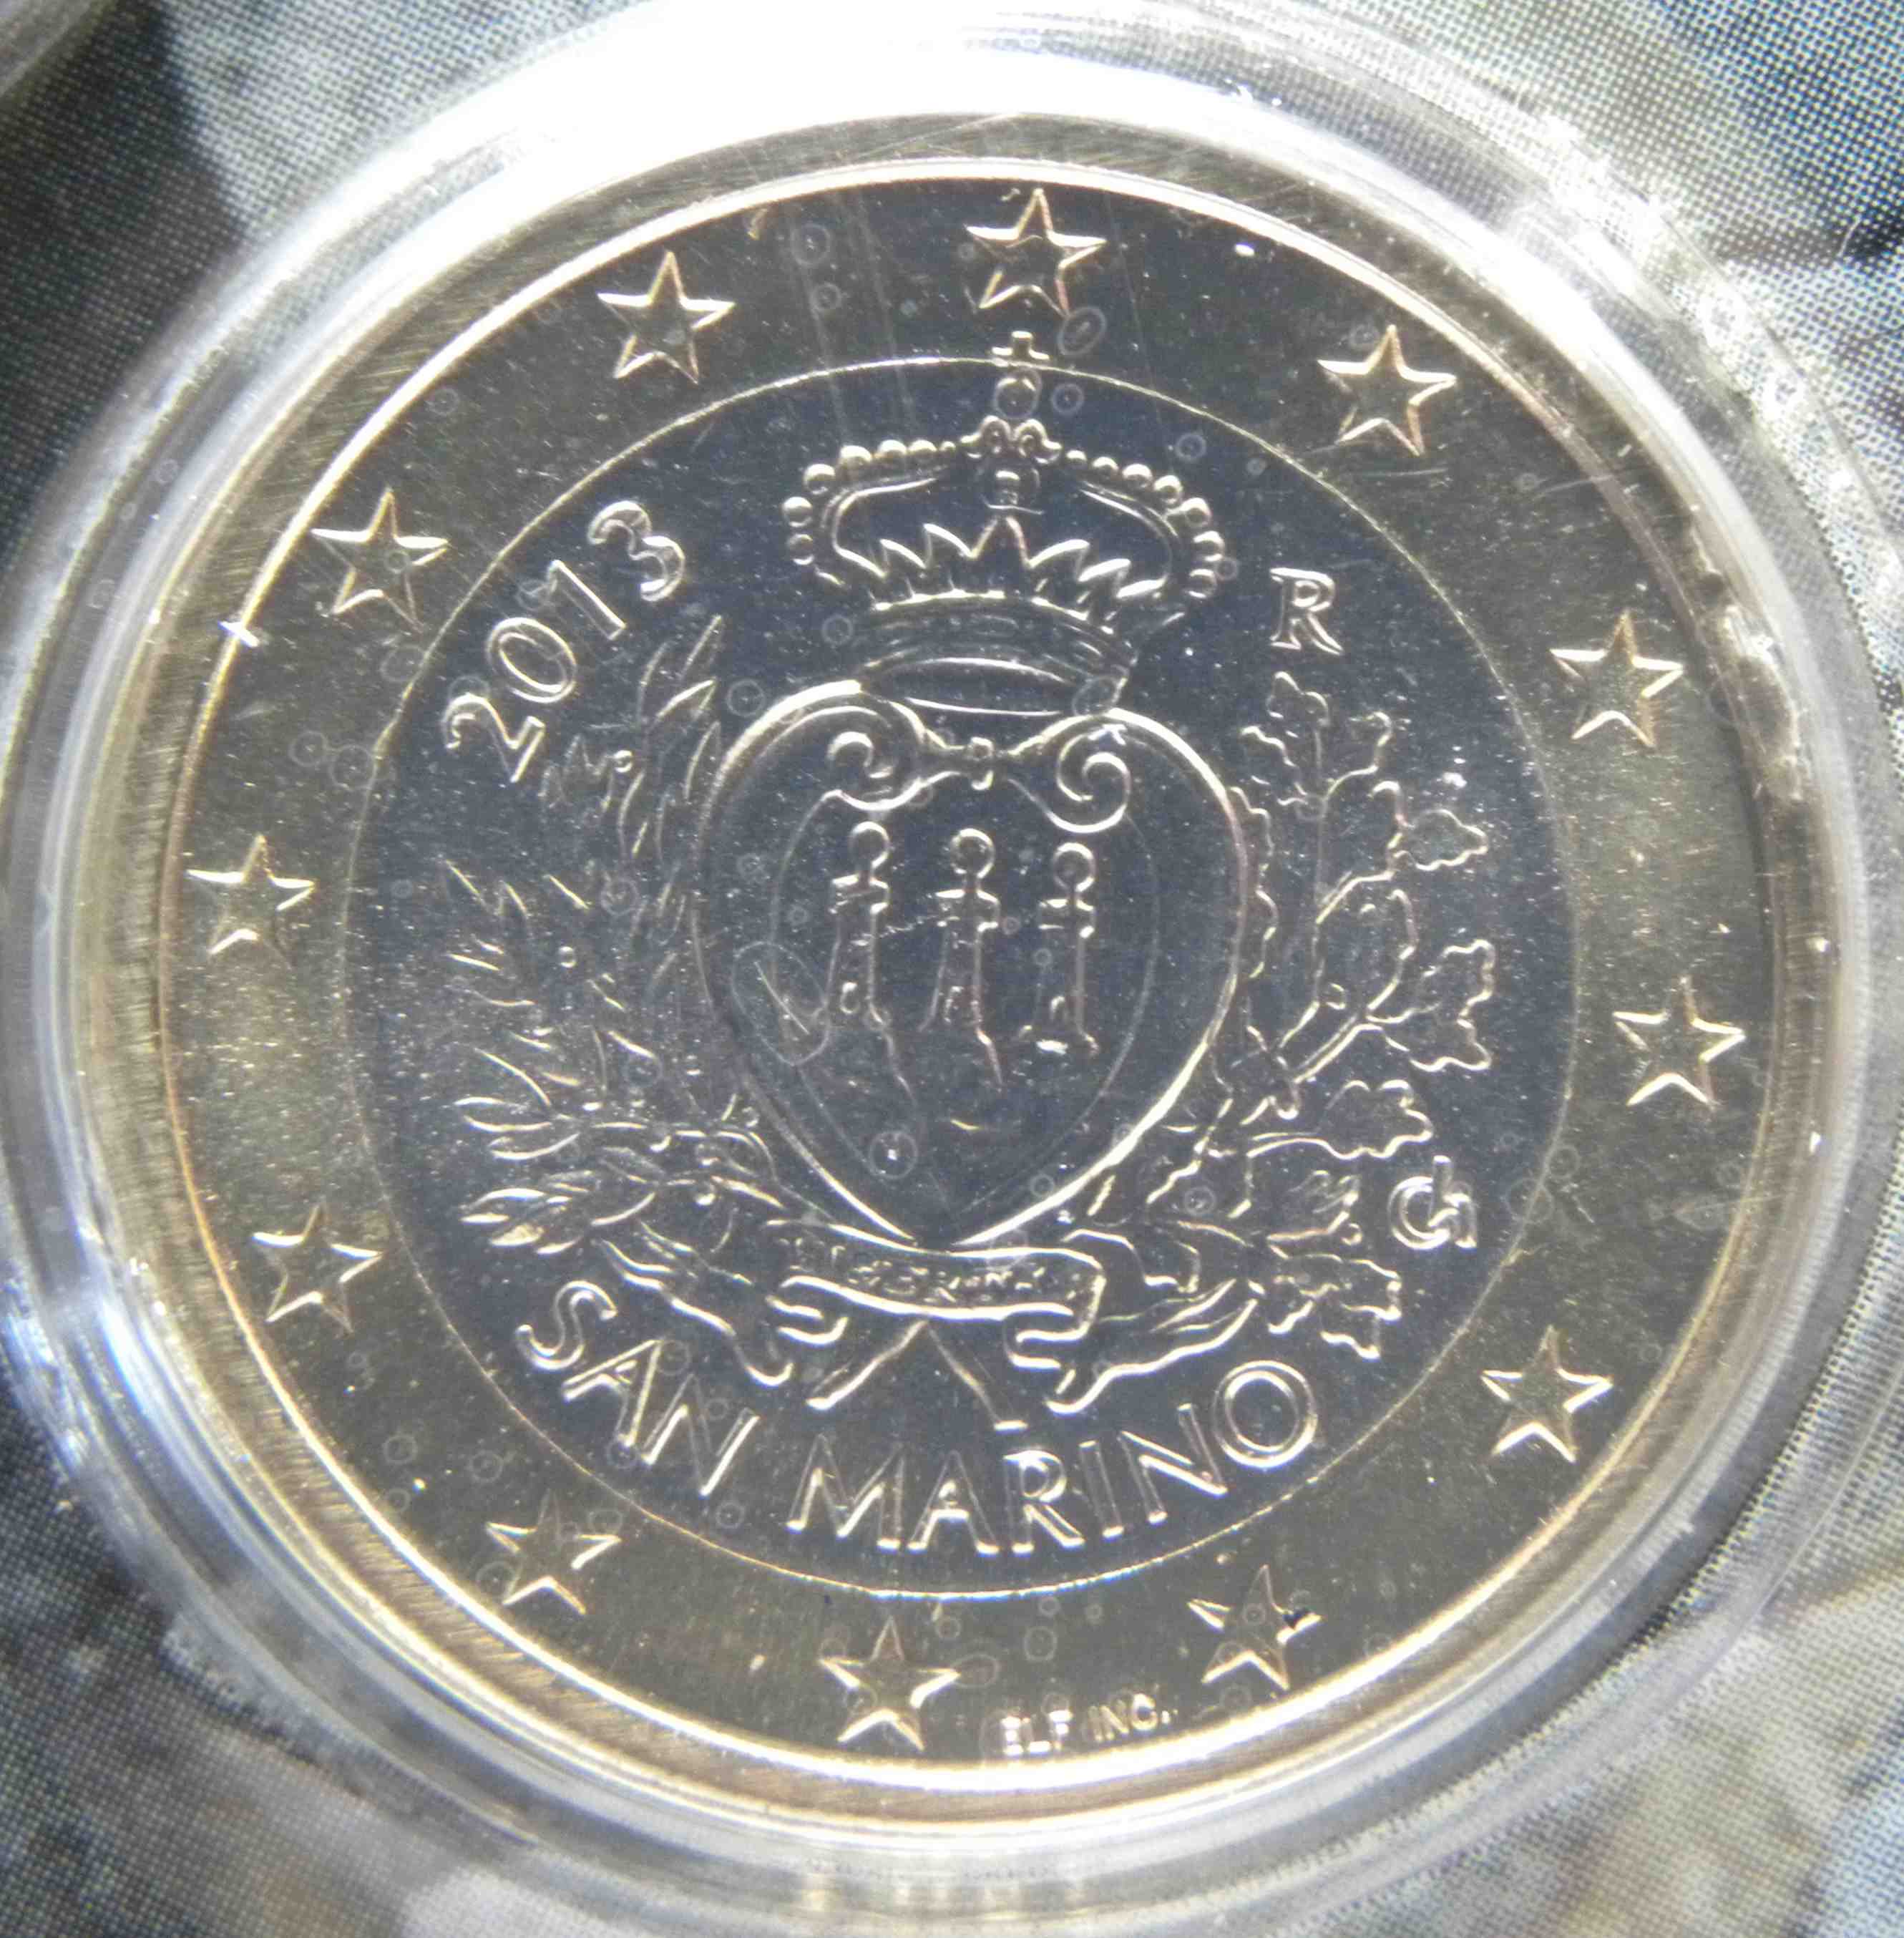 San Marino 1 Euro Münze 2013 - euro-muenzen.tv - Der Online Euromünzen